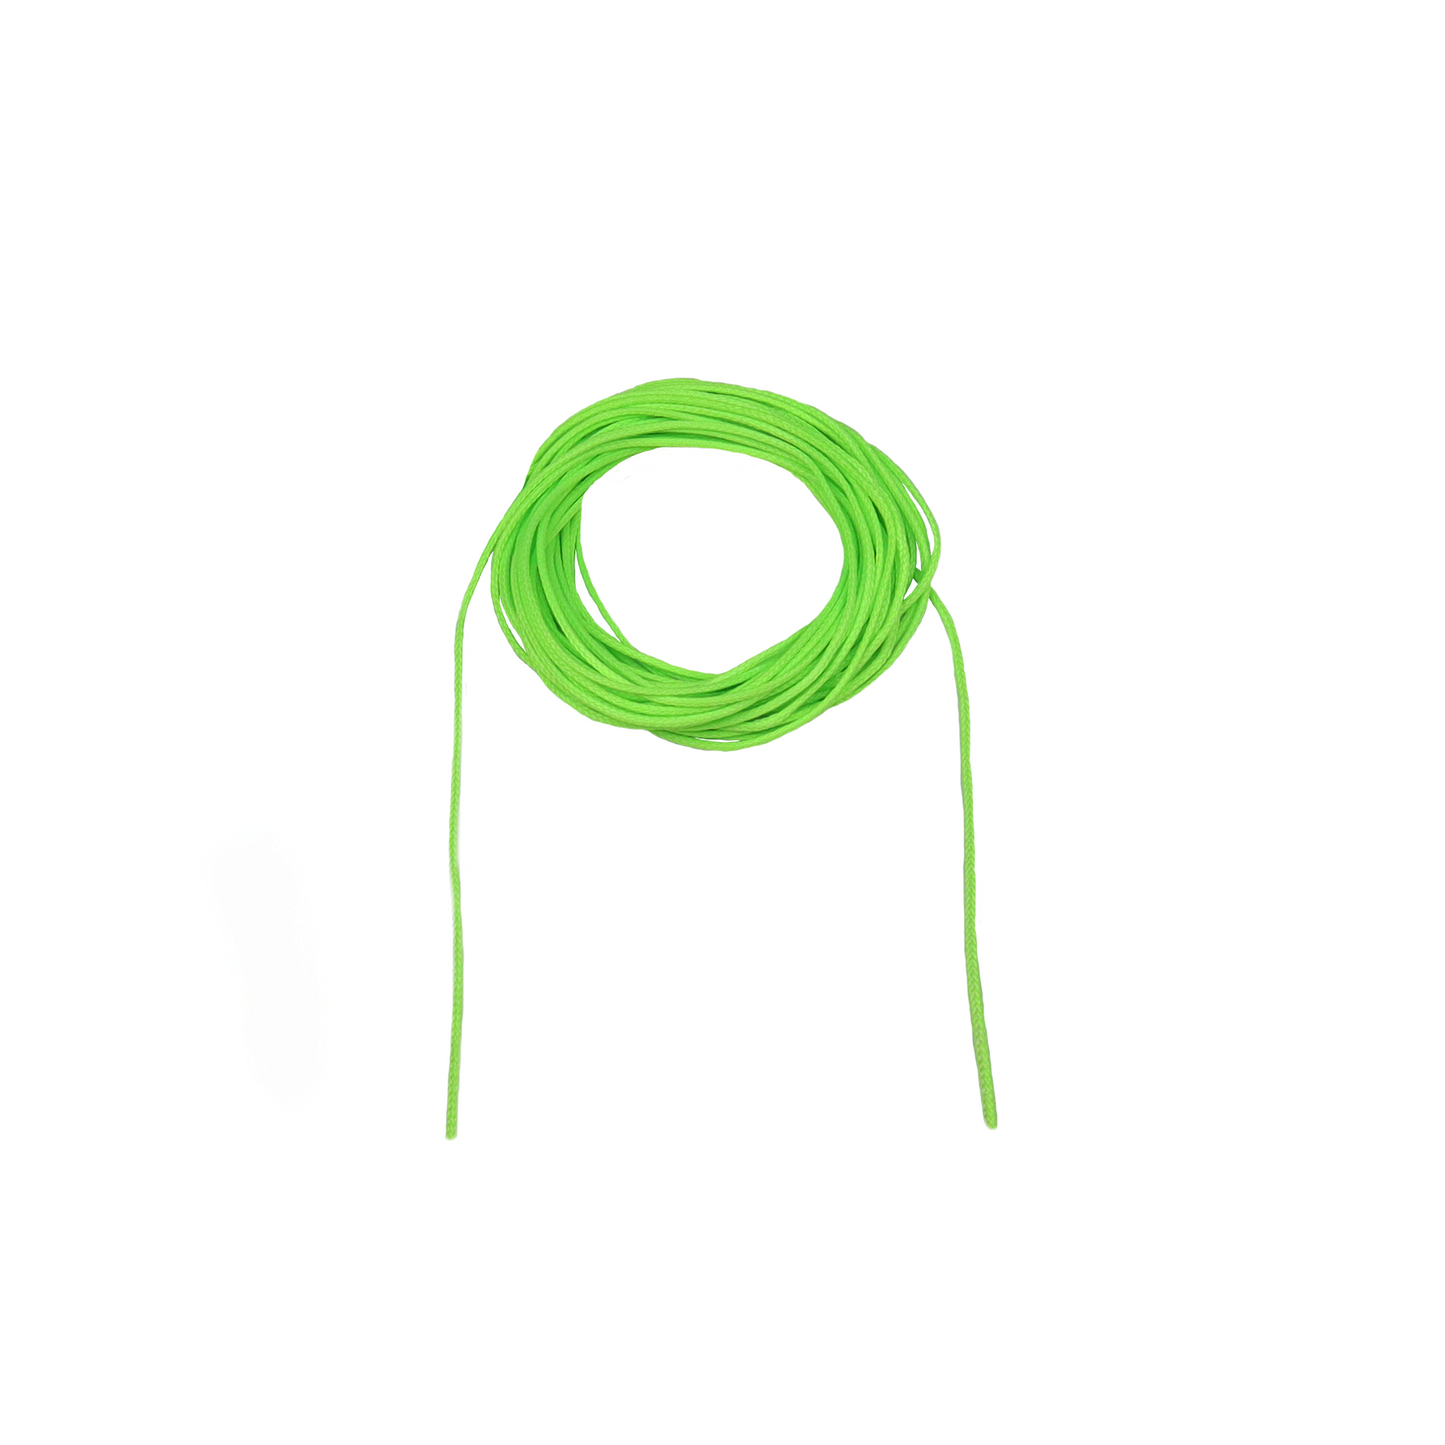 Green DynaGlide Gear Hoist/Throw Line no Spliced Eyes